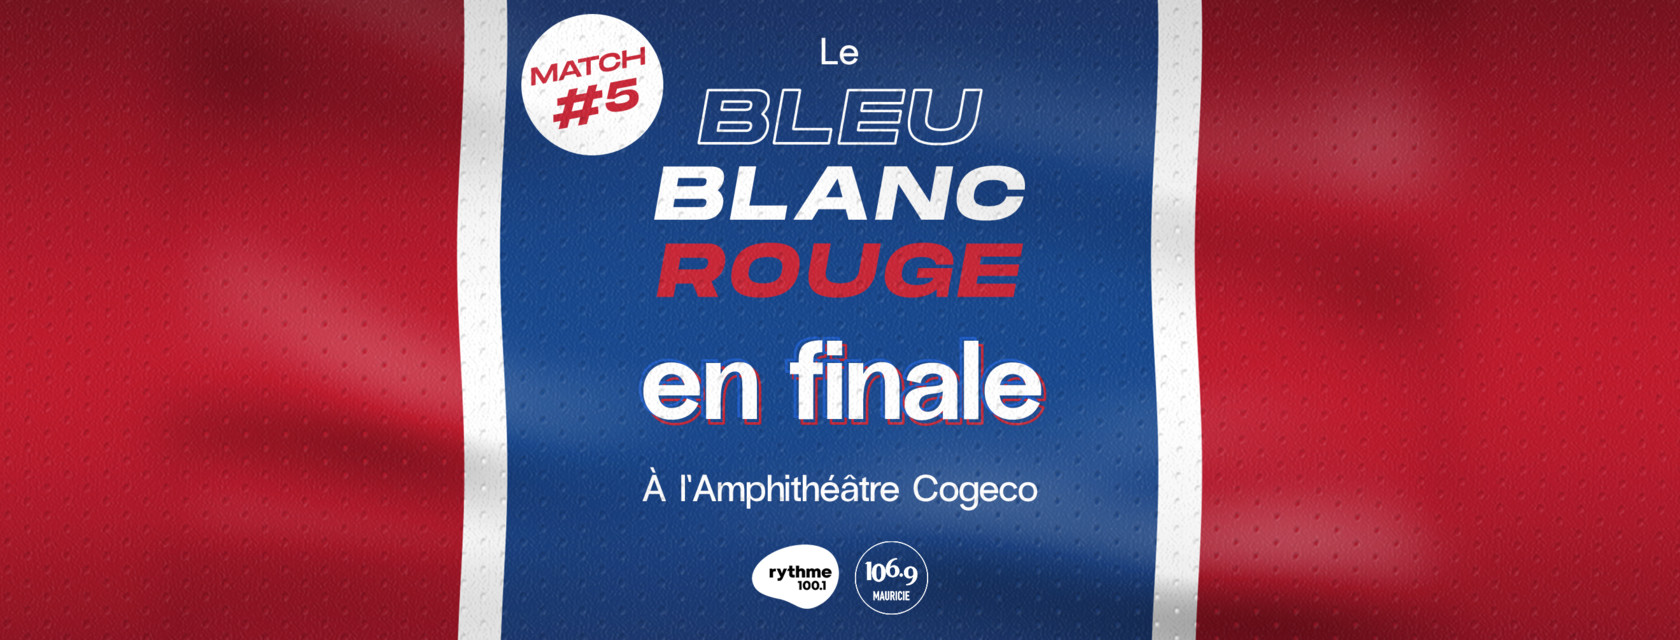 Le match numéro 5 de la finale du bleu blanc rouge à l’Amphithéâtre Cogeco!